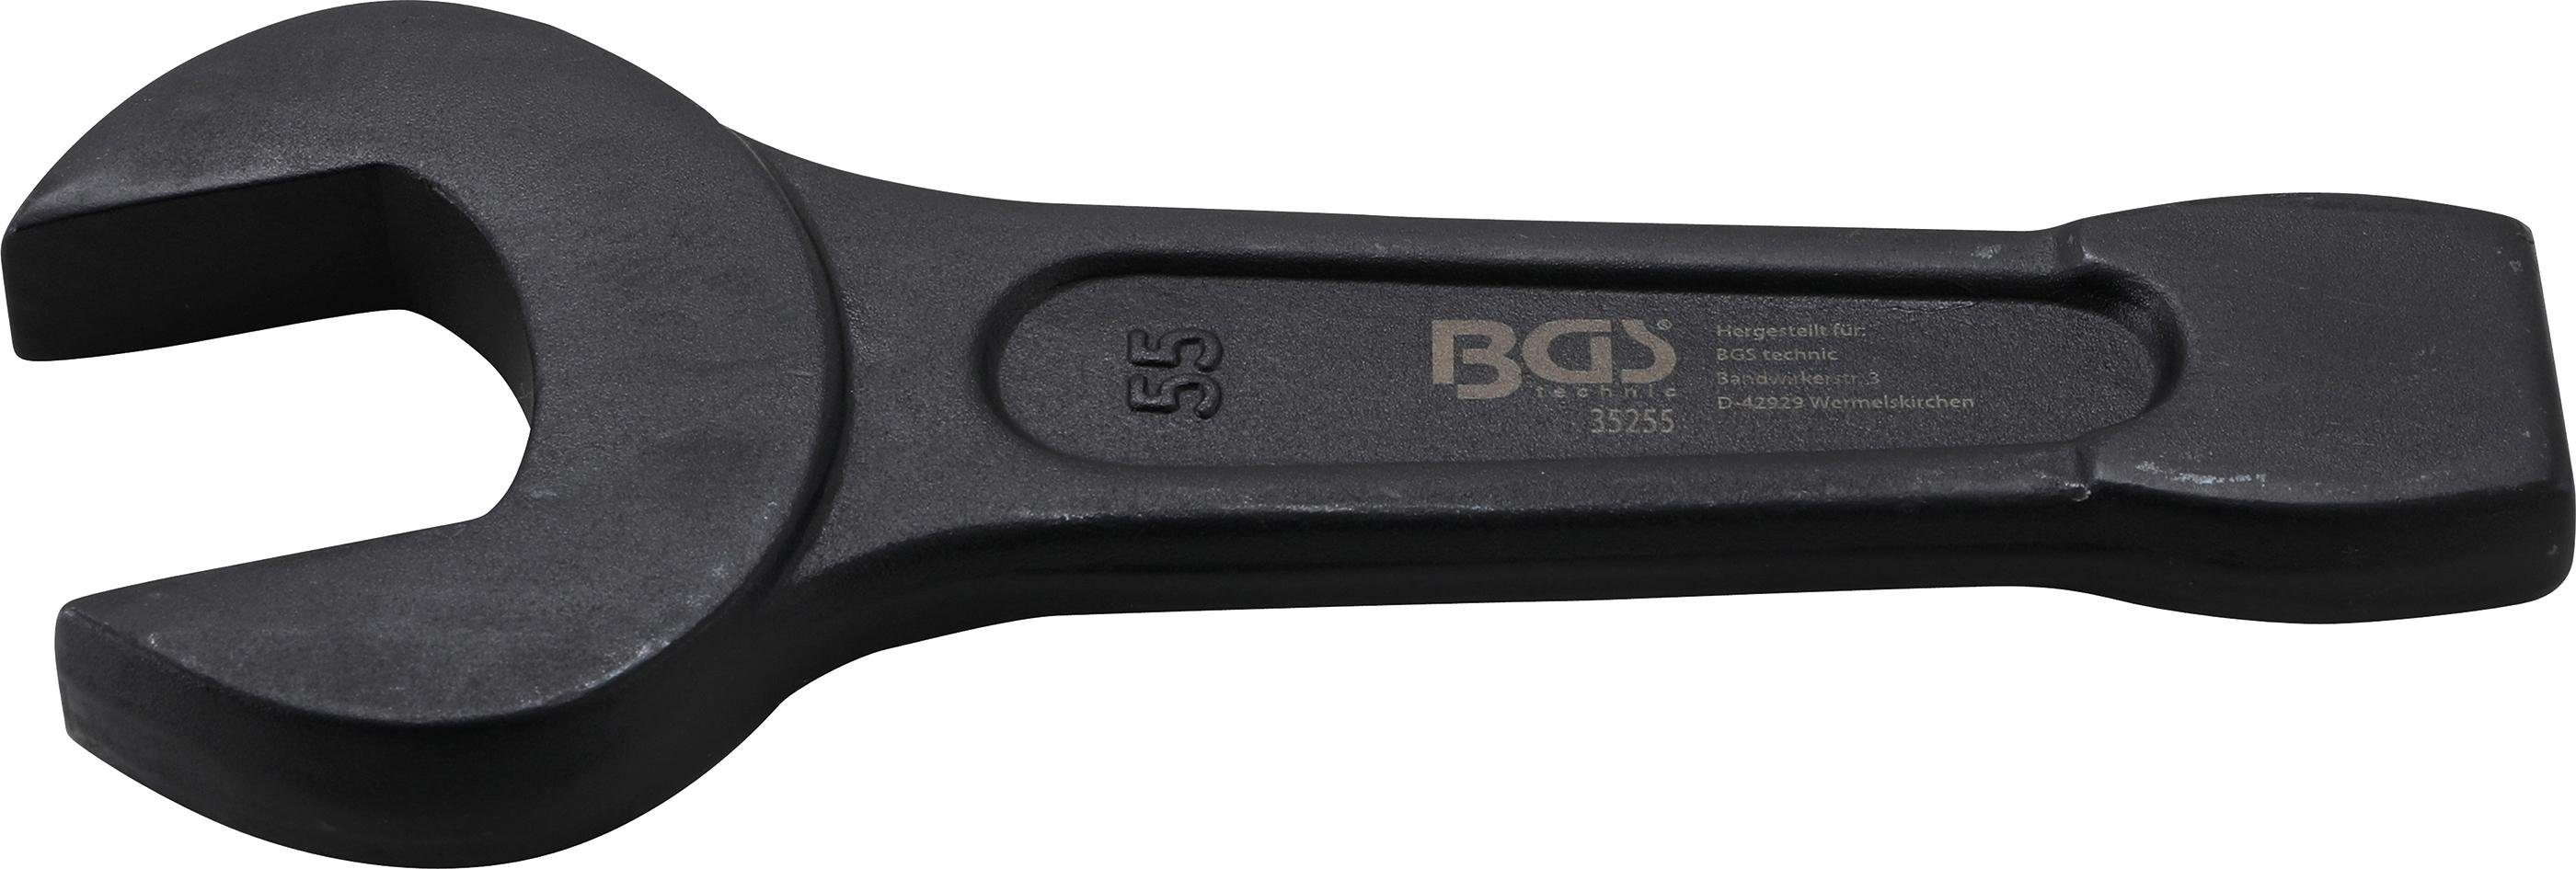 BGS technic Maulschlüssel Schlag-Maulschlüssel, SW 55 mm